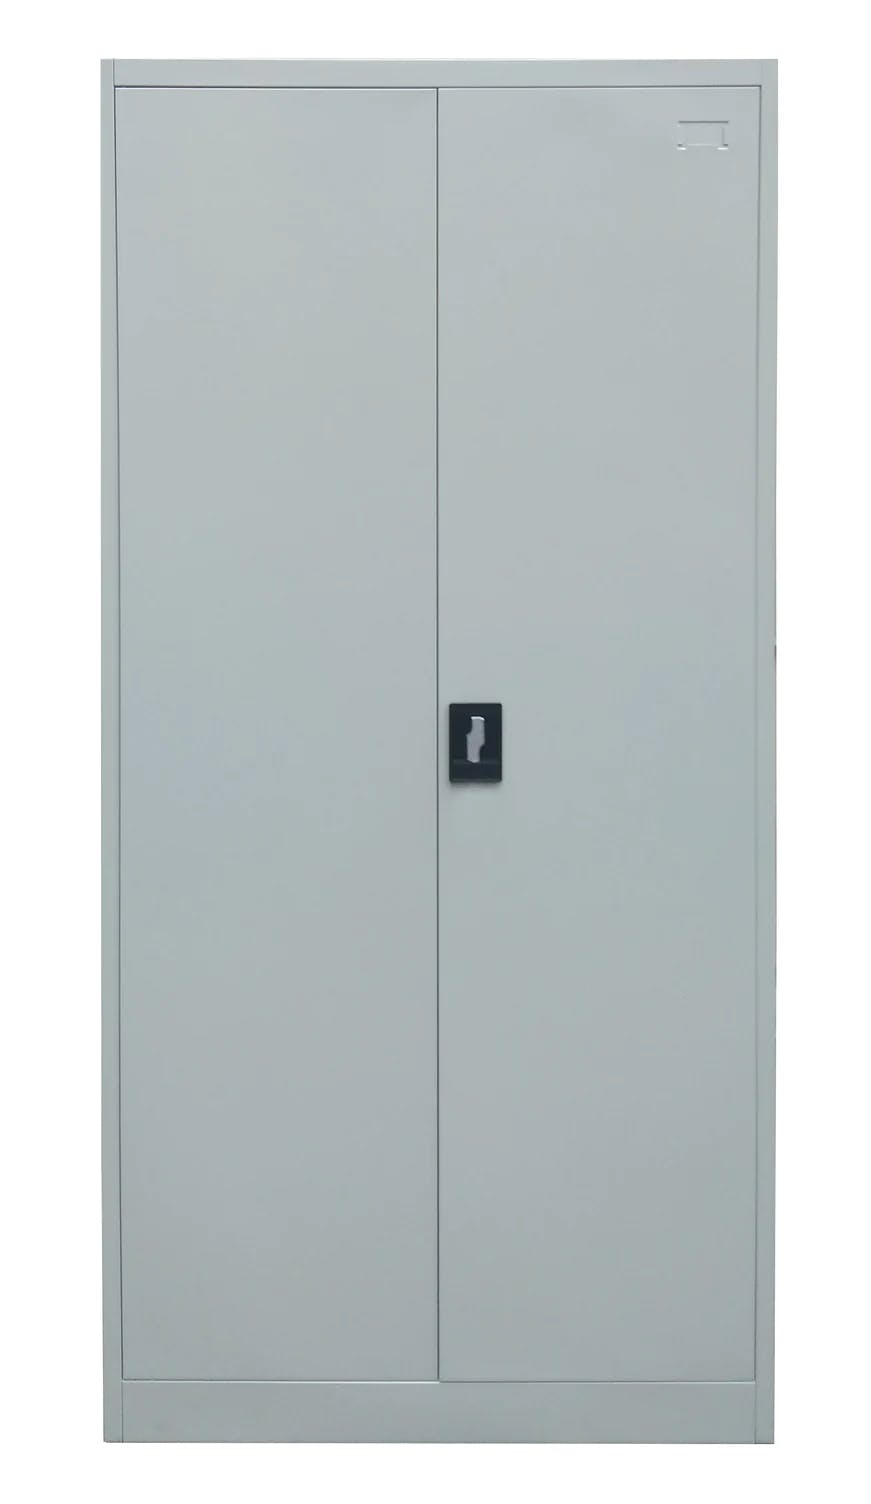 2 Door Steel Storage Cabinet with Five Shelves | Light Gray